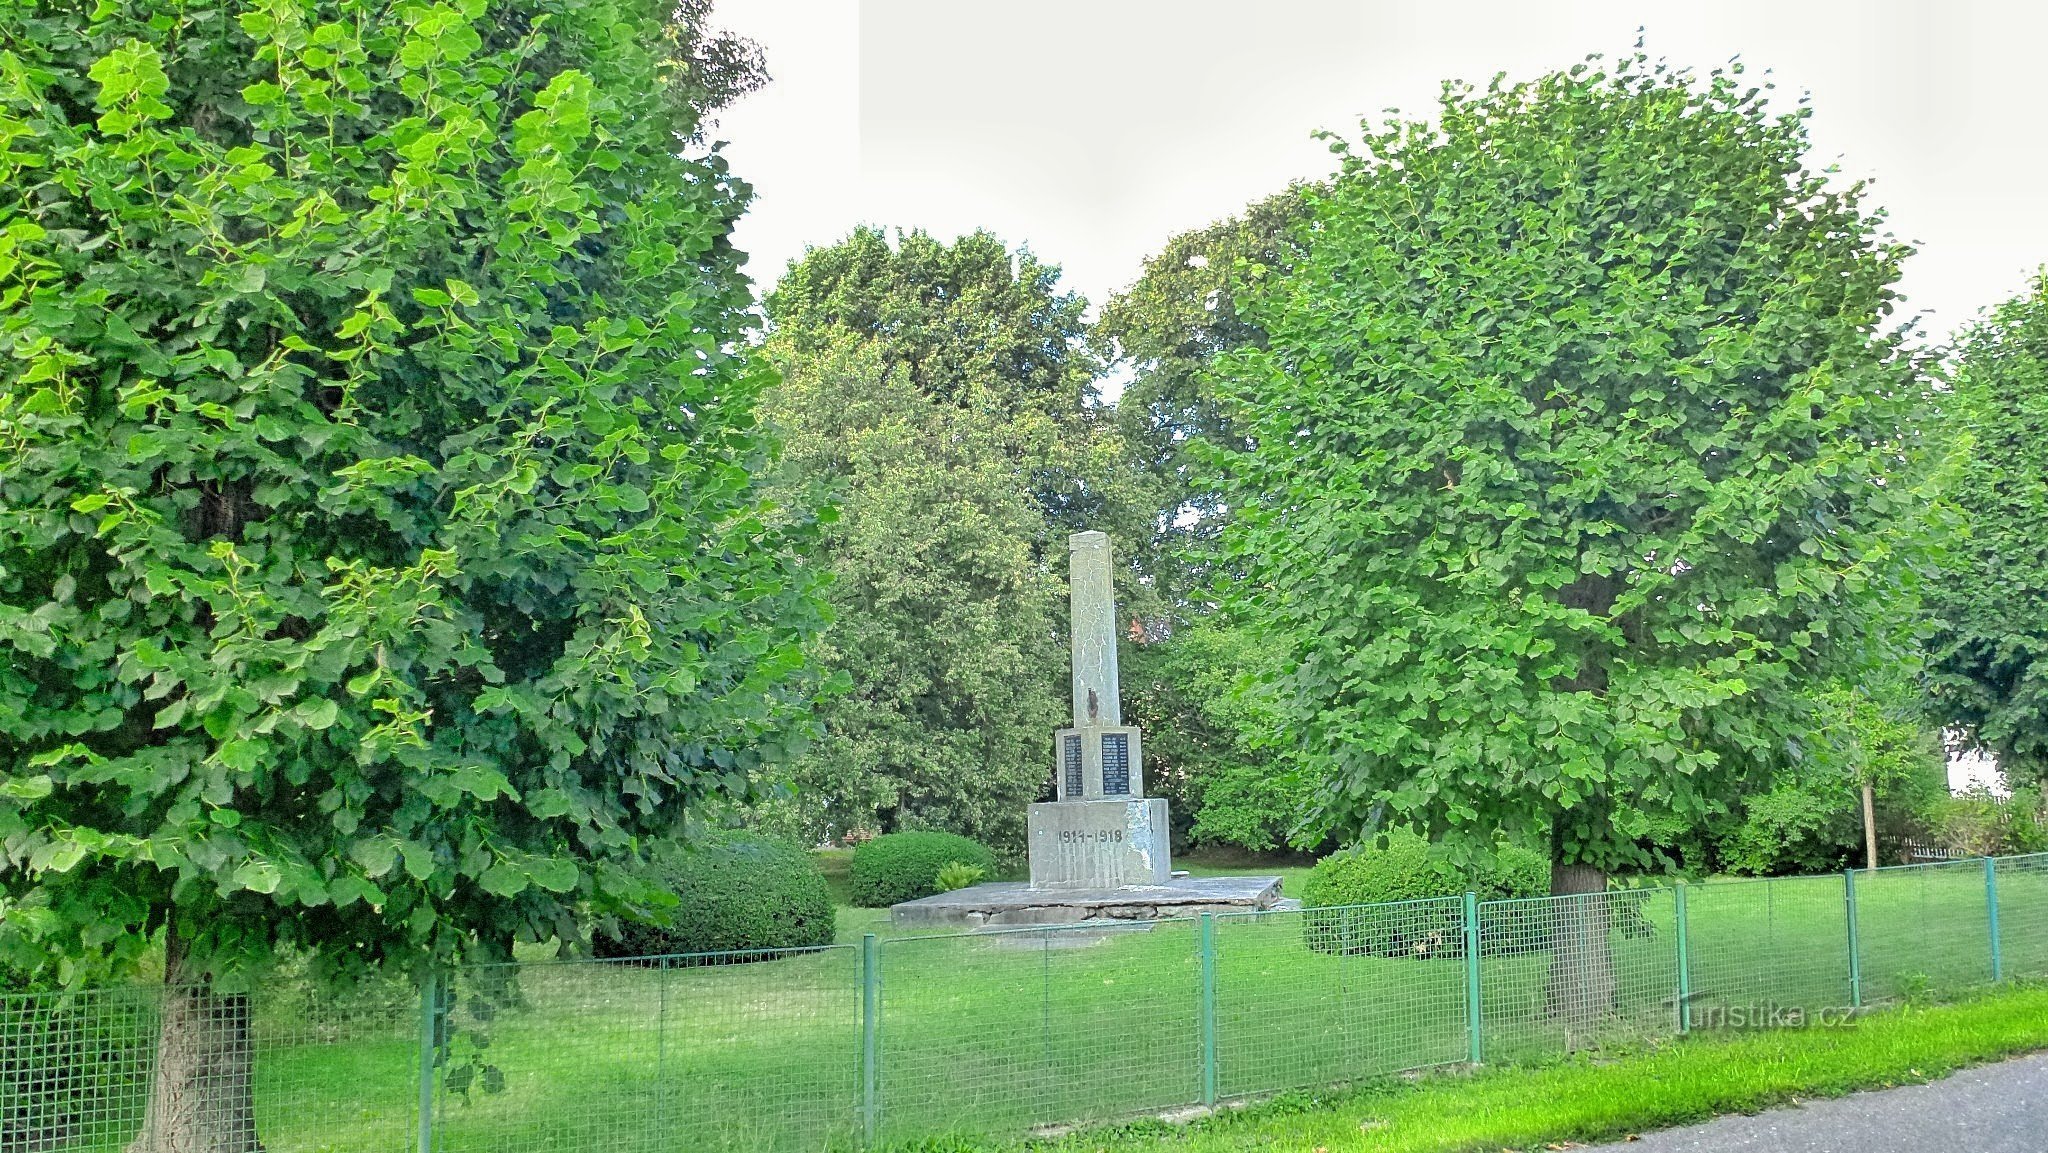 Spomen obilježje poginulima u Prvom svjetskom ratu. Nalazi se u parku groblja Choltice.